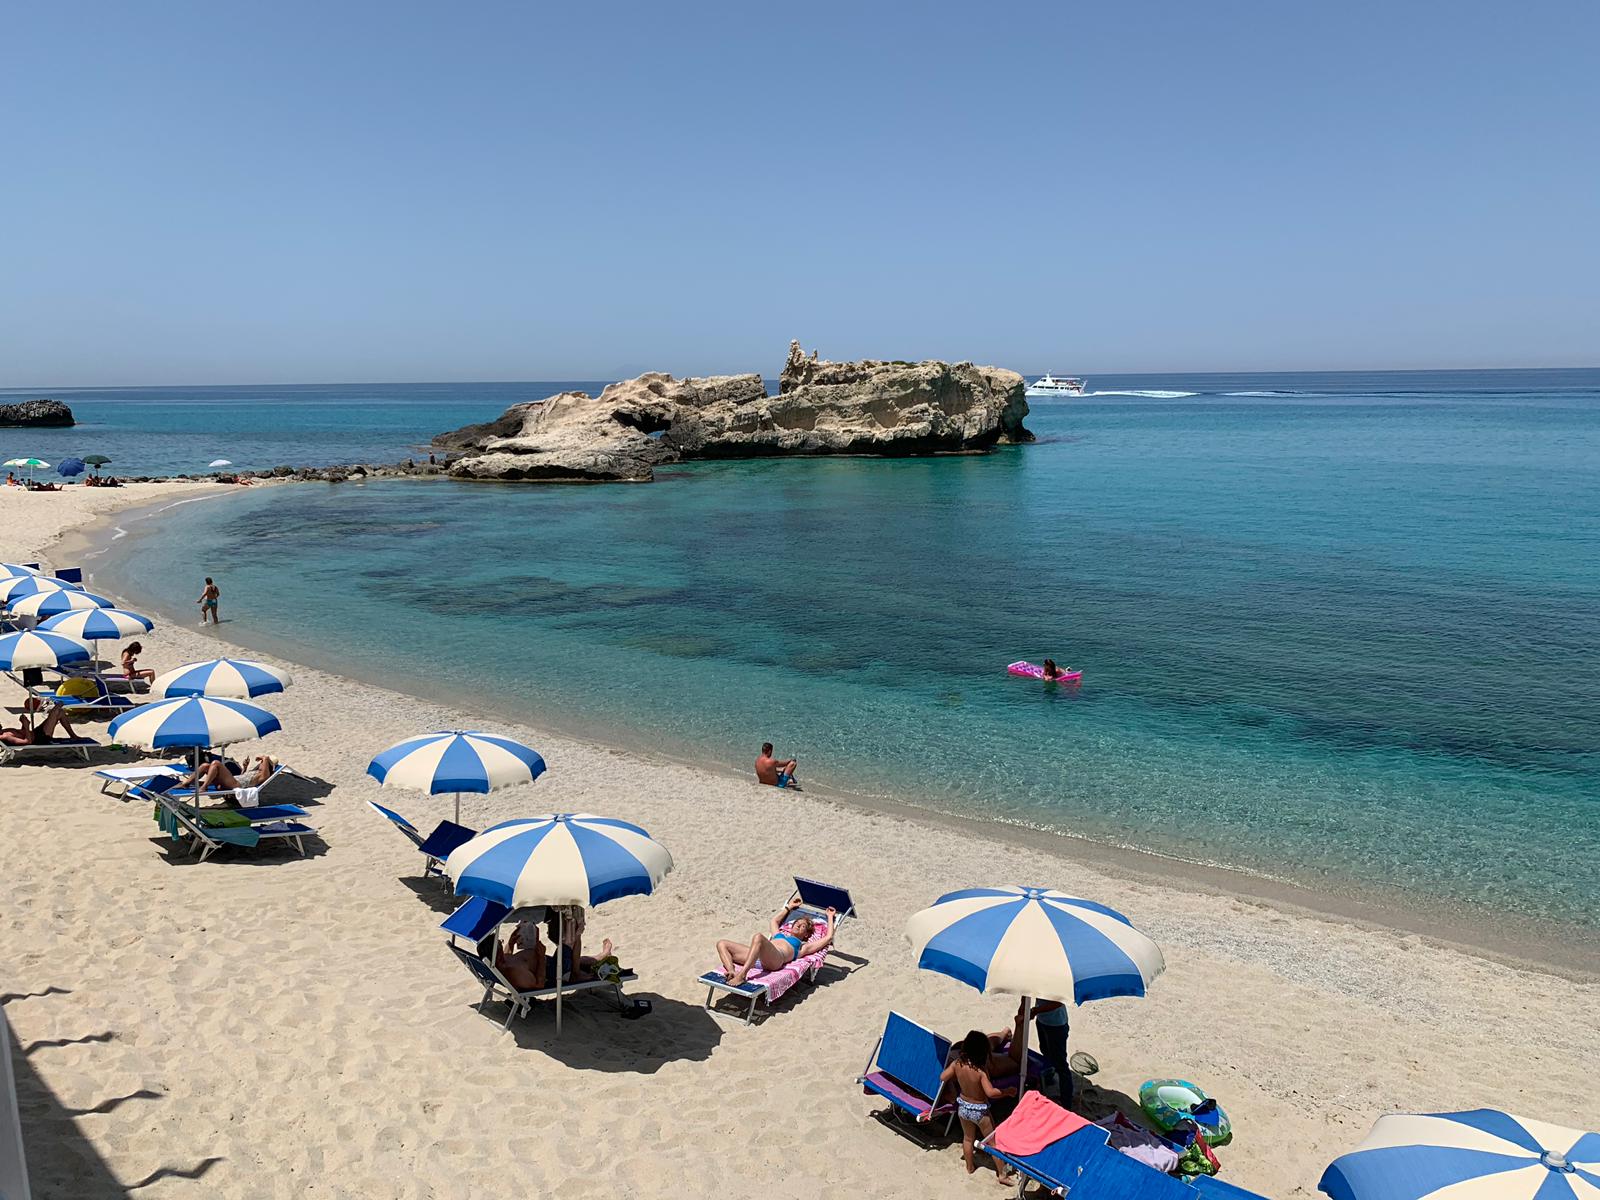 Spiaggia di Riaci'in fotoğrafı plaj tatil beldesi alanı